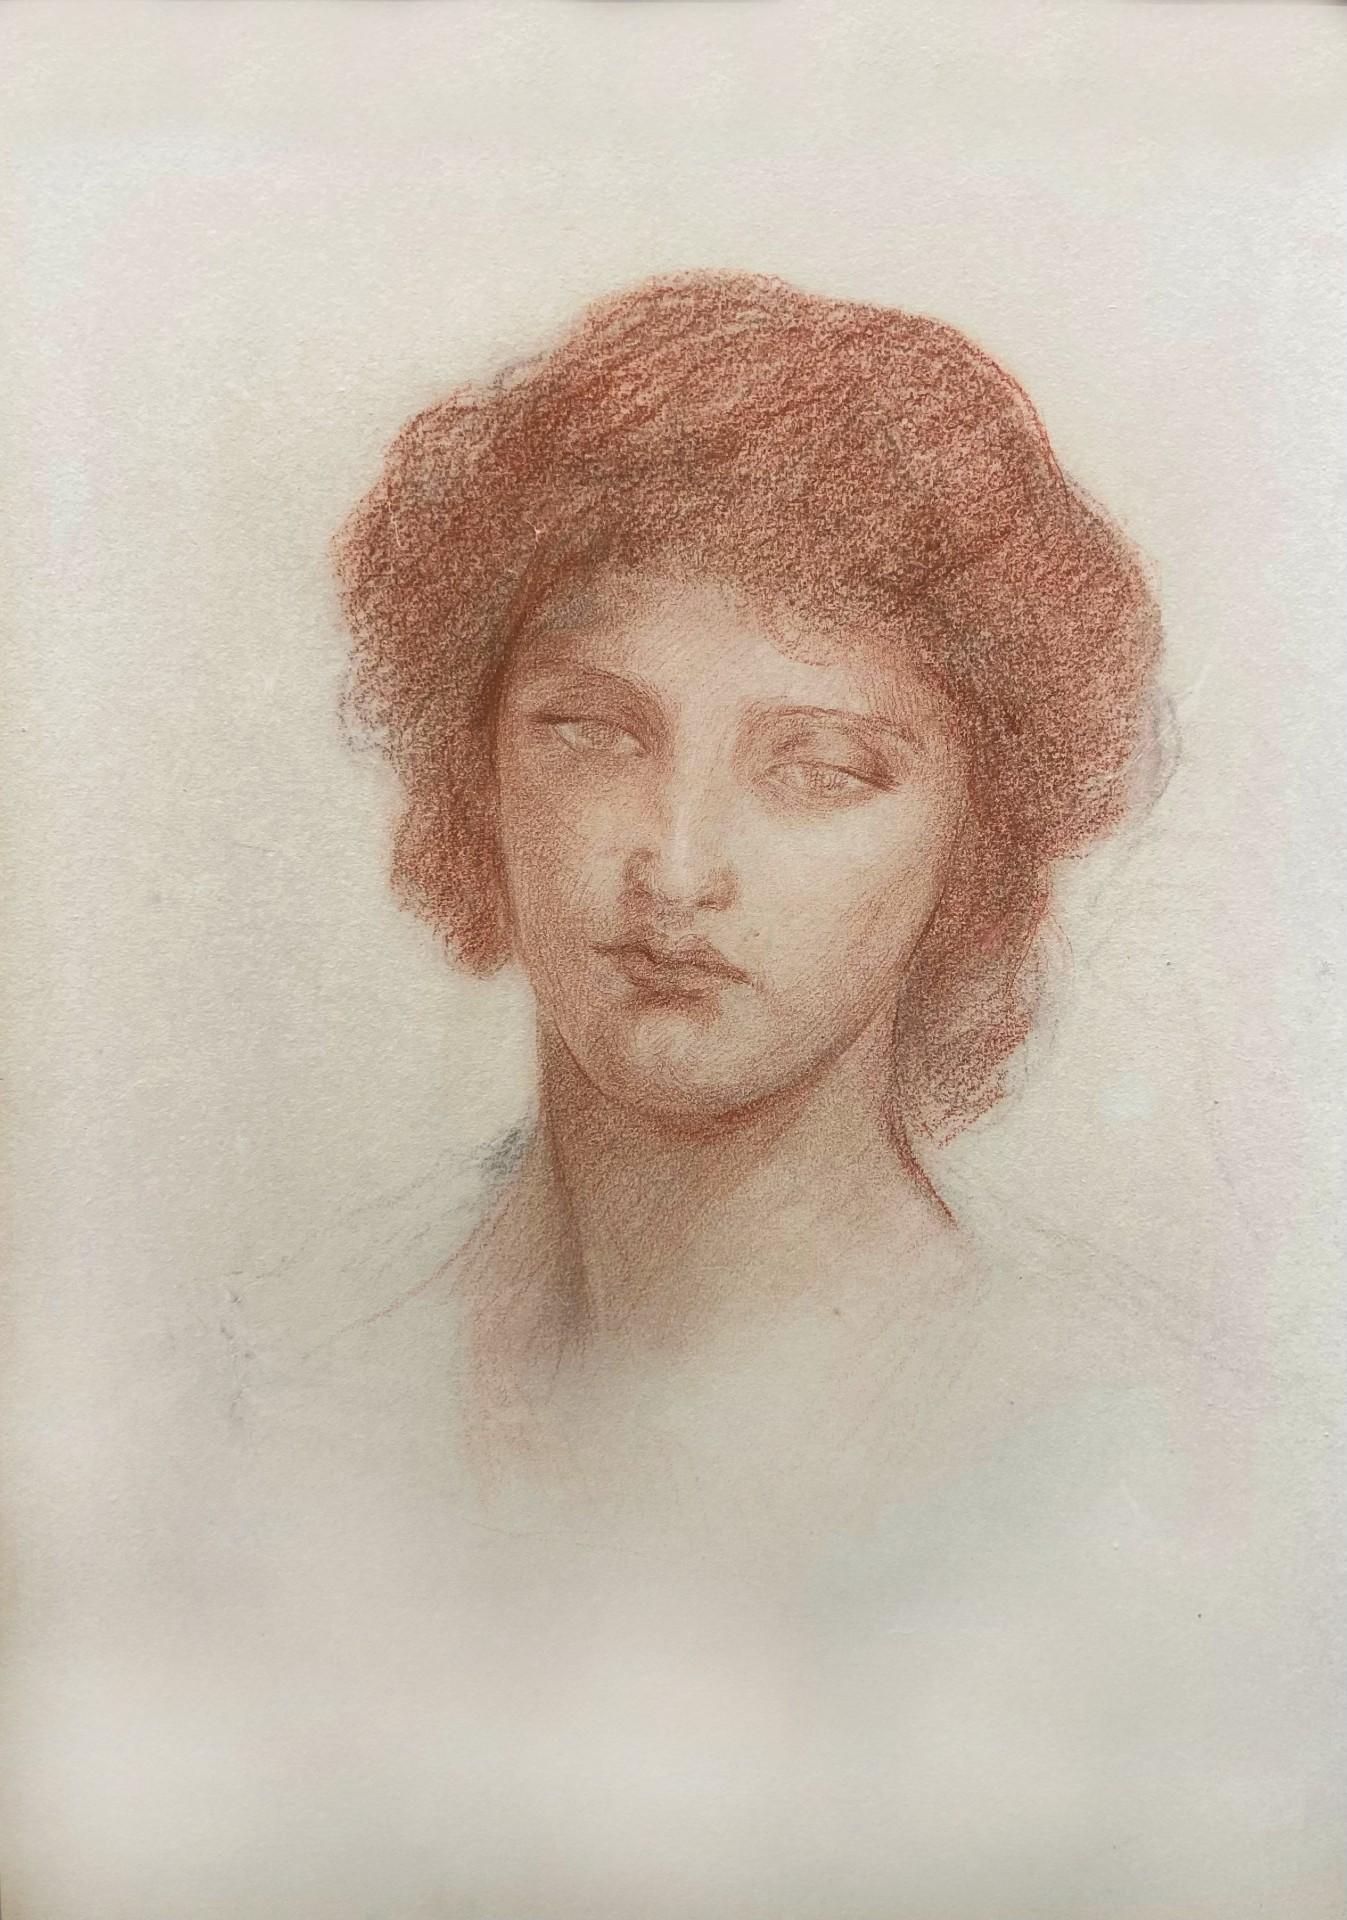 Porträt einer jungen Frau, Zeichnung aus rotem Kreide und Graphit, präraffaelitisch